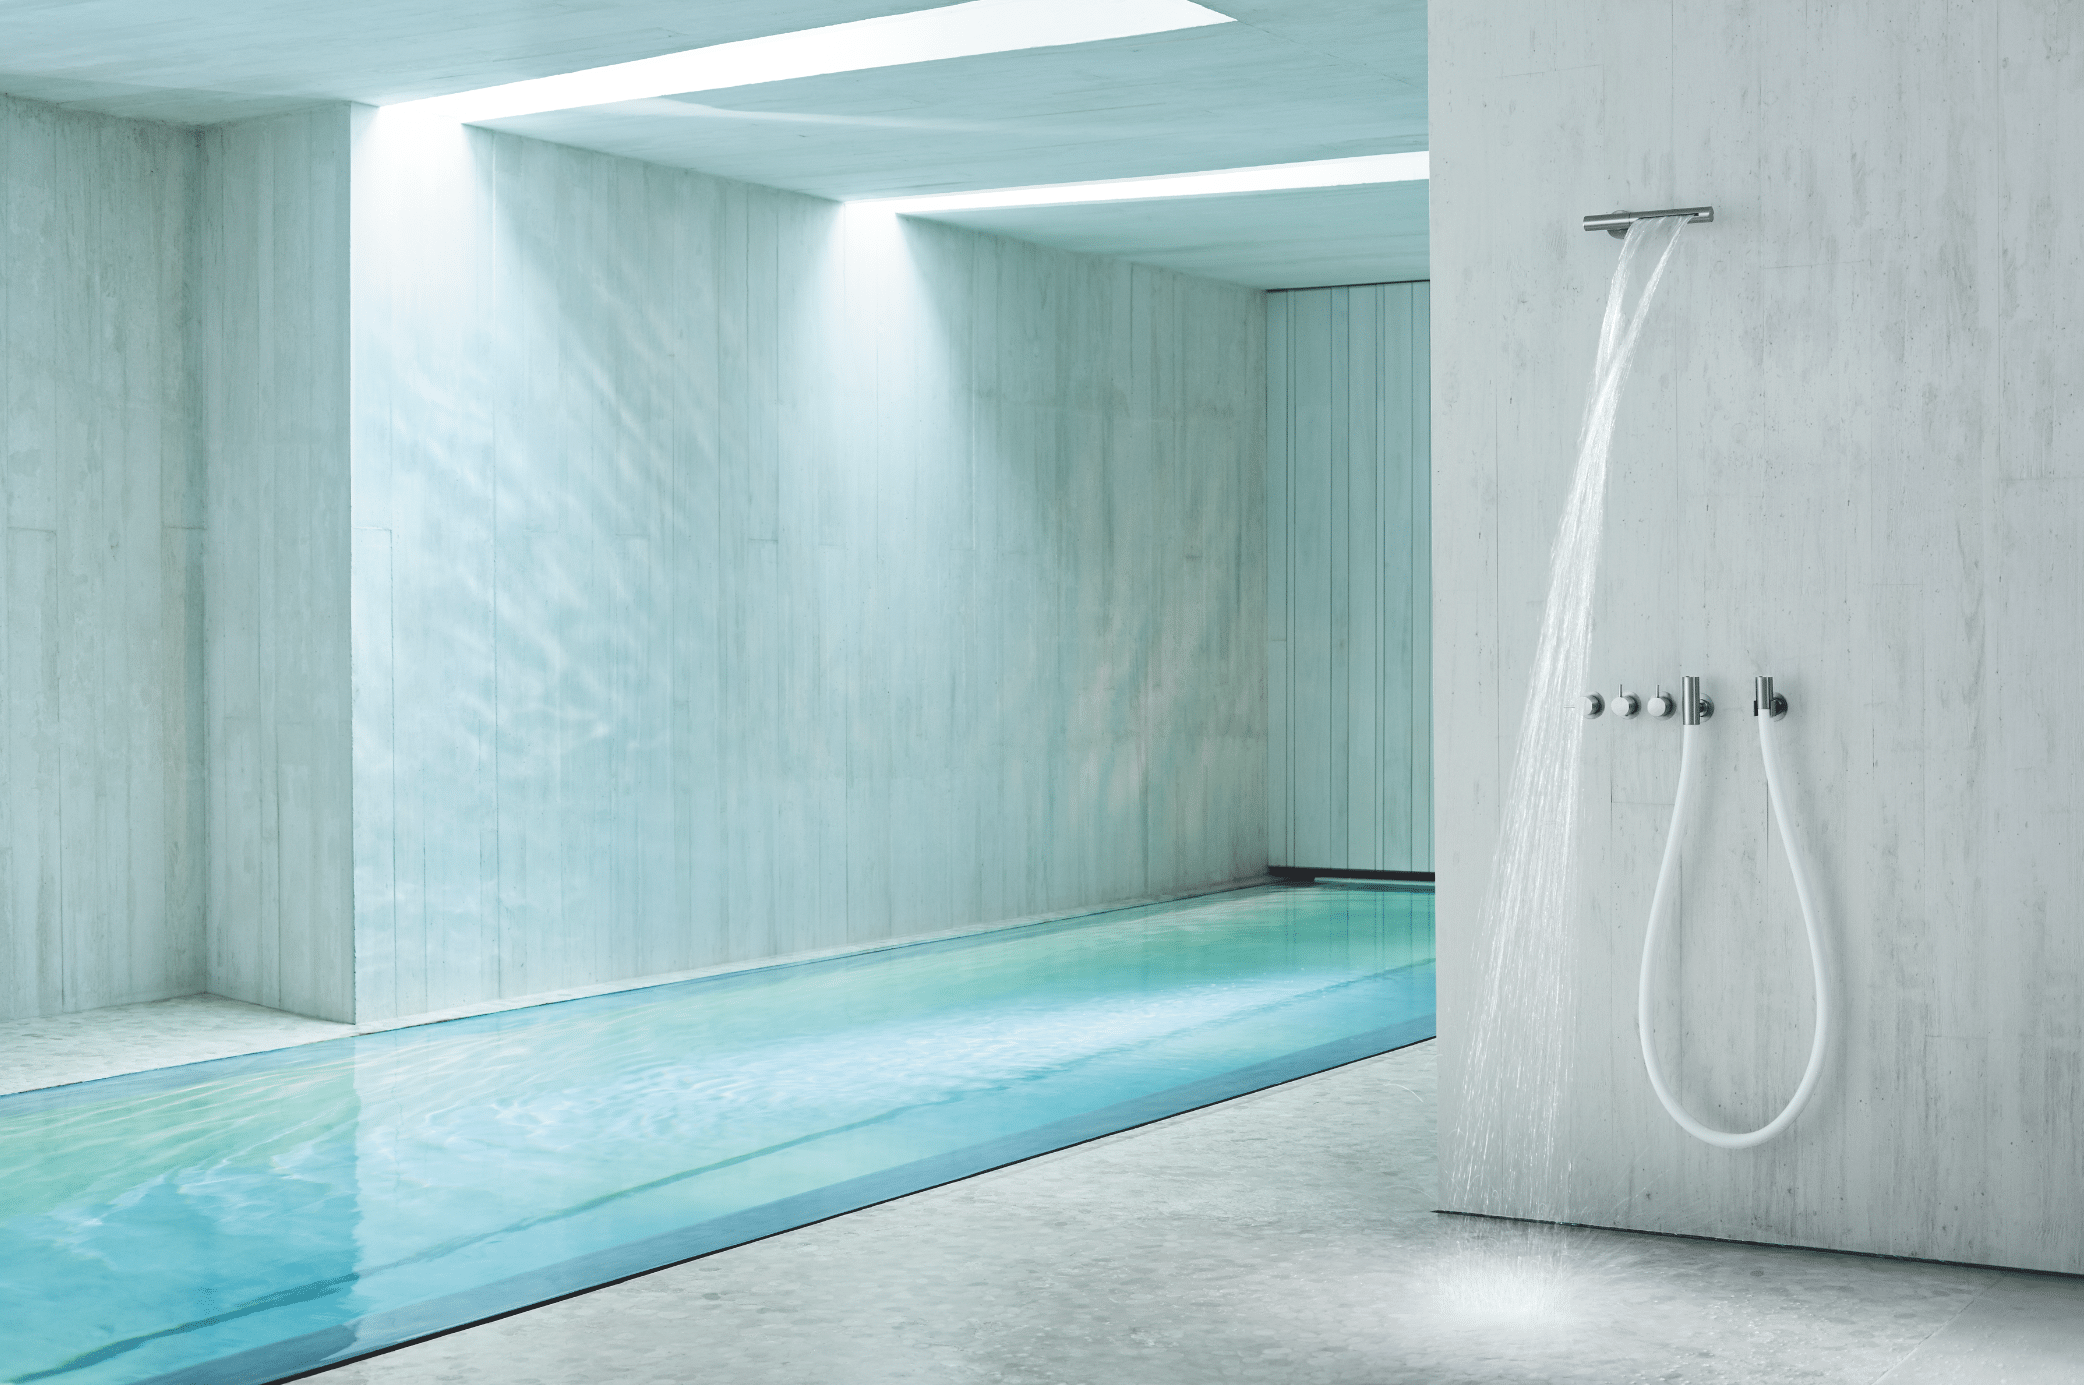 VOLA zeigt einen Spa-Bereich mit Pool und offener Dusche mit silbernen Armaturen.